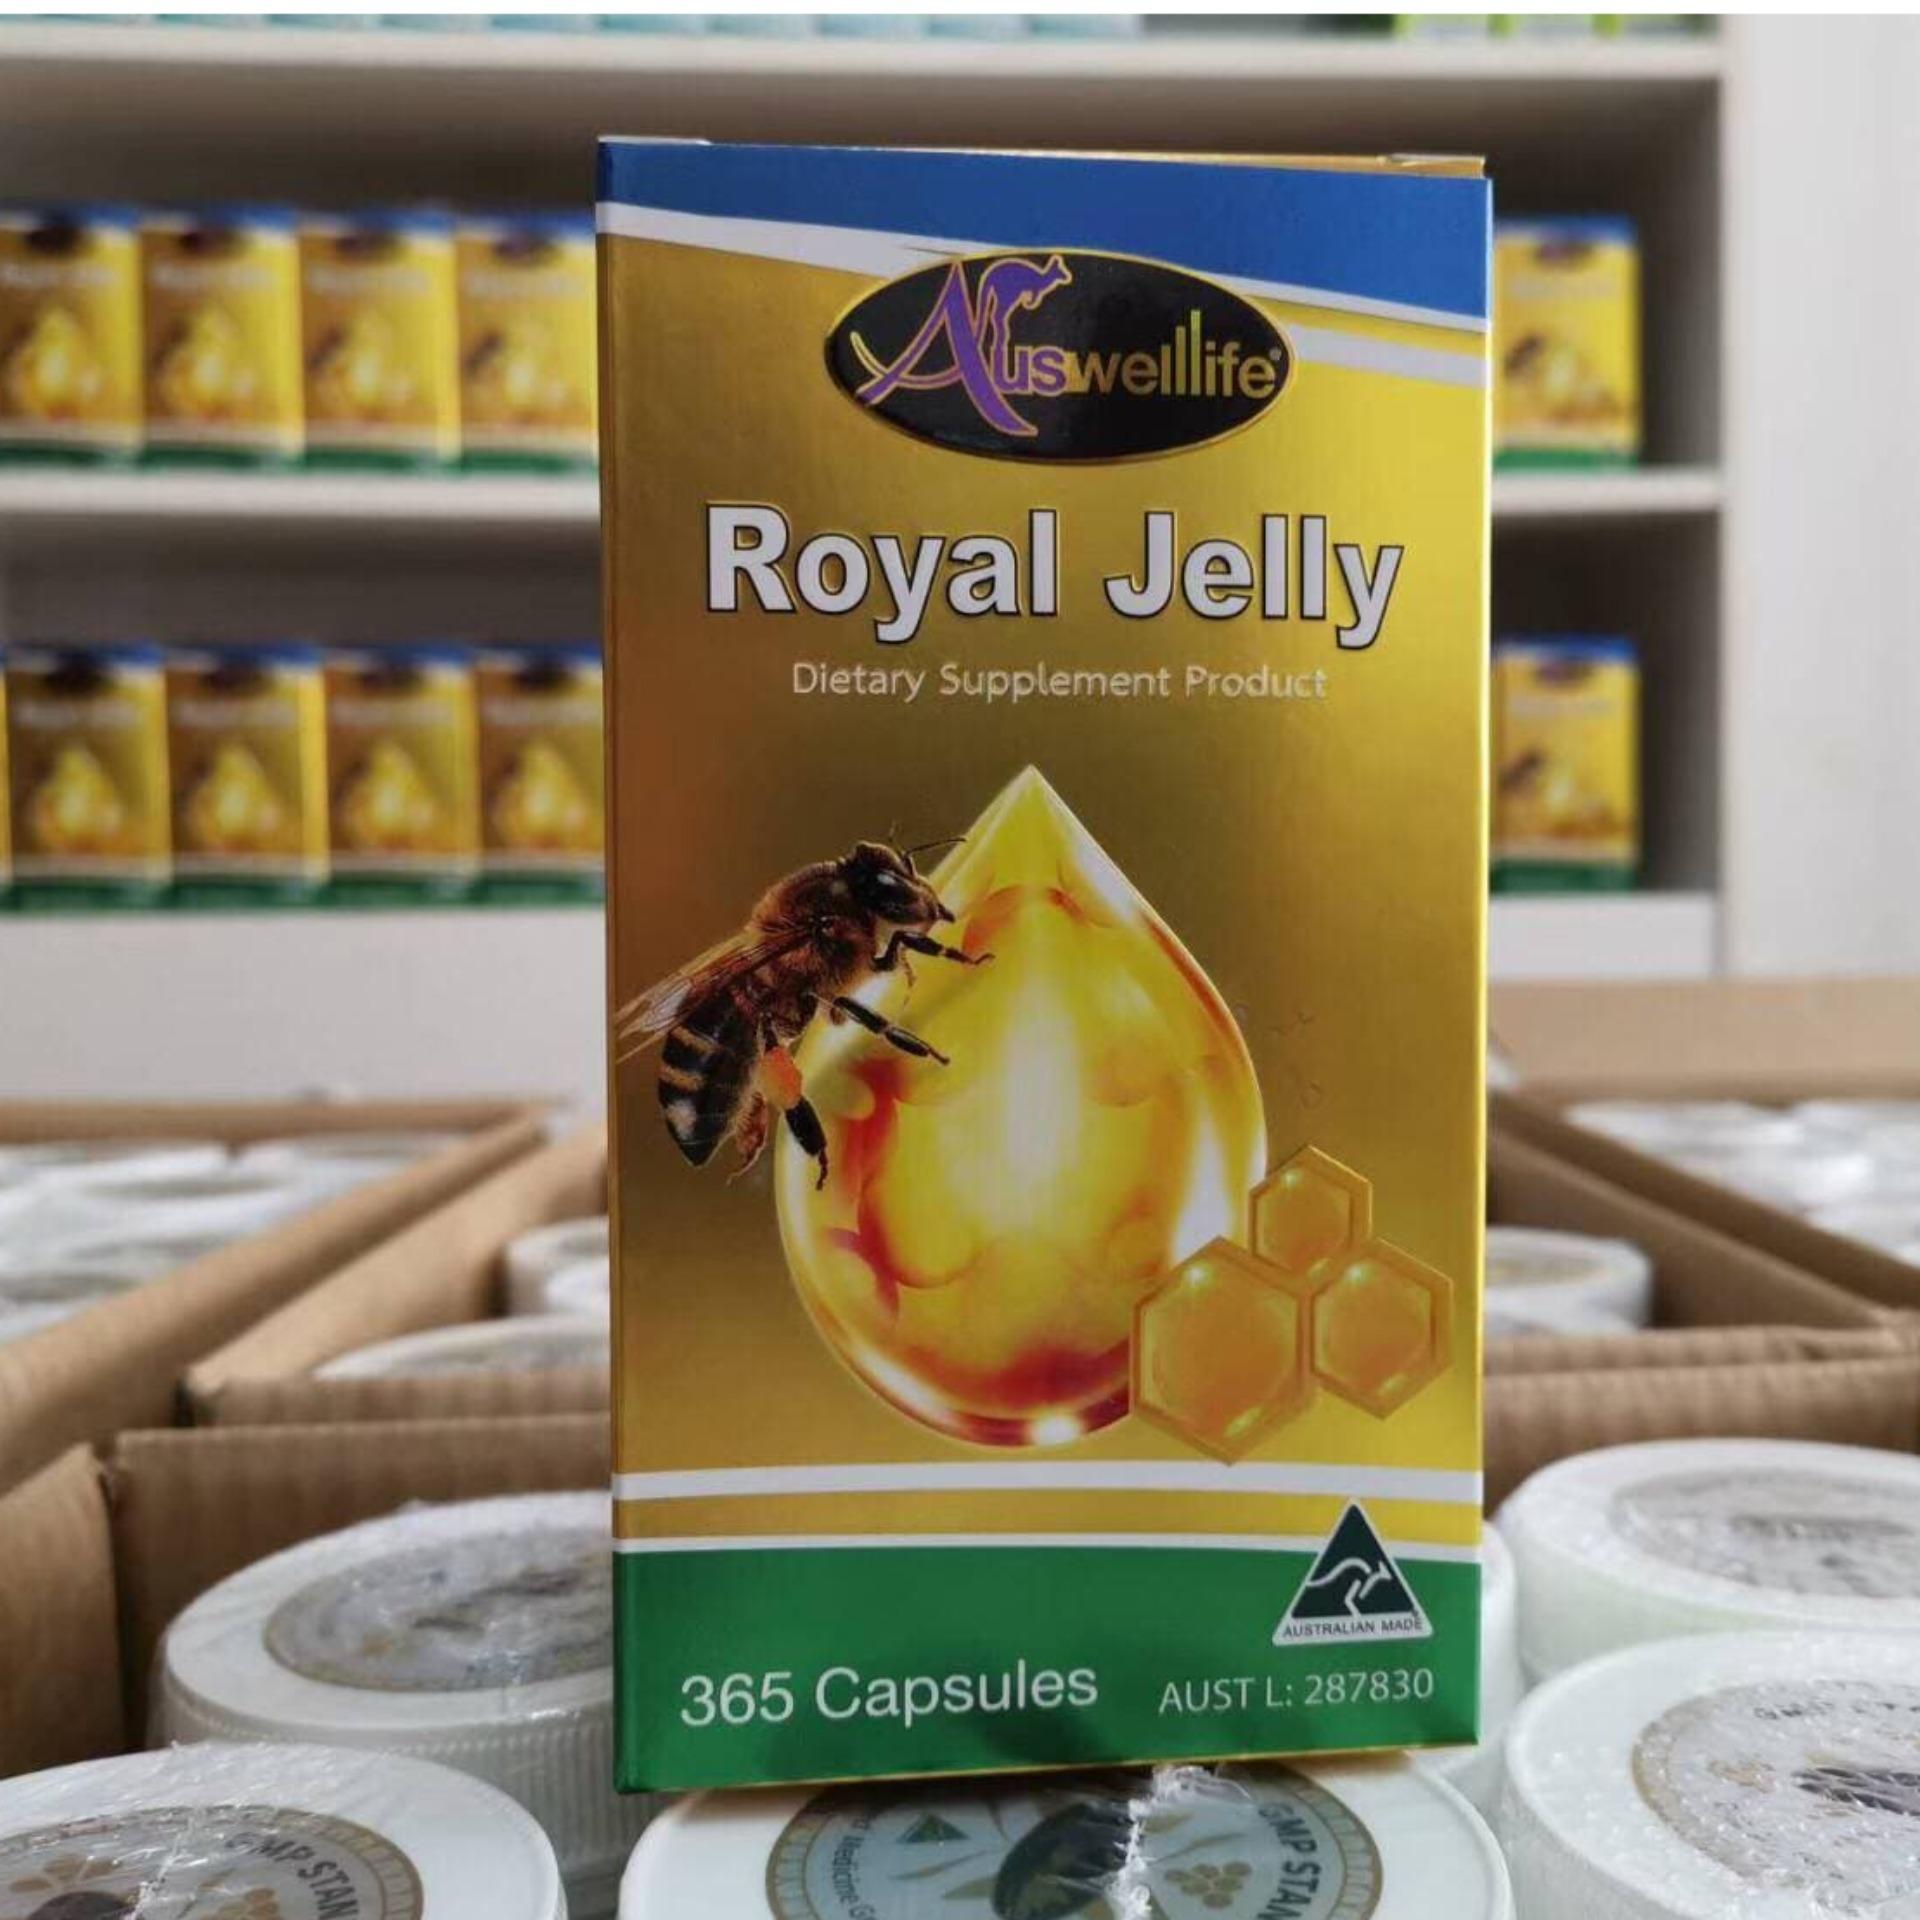 Auswelllife Royal Jelly นมผึ้งเกรดพรีเมี่ยม จากออสเตรเลีย 100% Royal Jelly 2180mg. บำรุงประสาทและสมอง 1 เม็ดก่อนนอนหลับสบาย ตื่นมาสดชื่น 1 กระปุก (365 แคปซูล) ทานได้ 1 ปี.